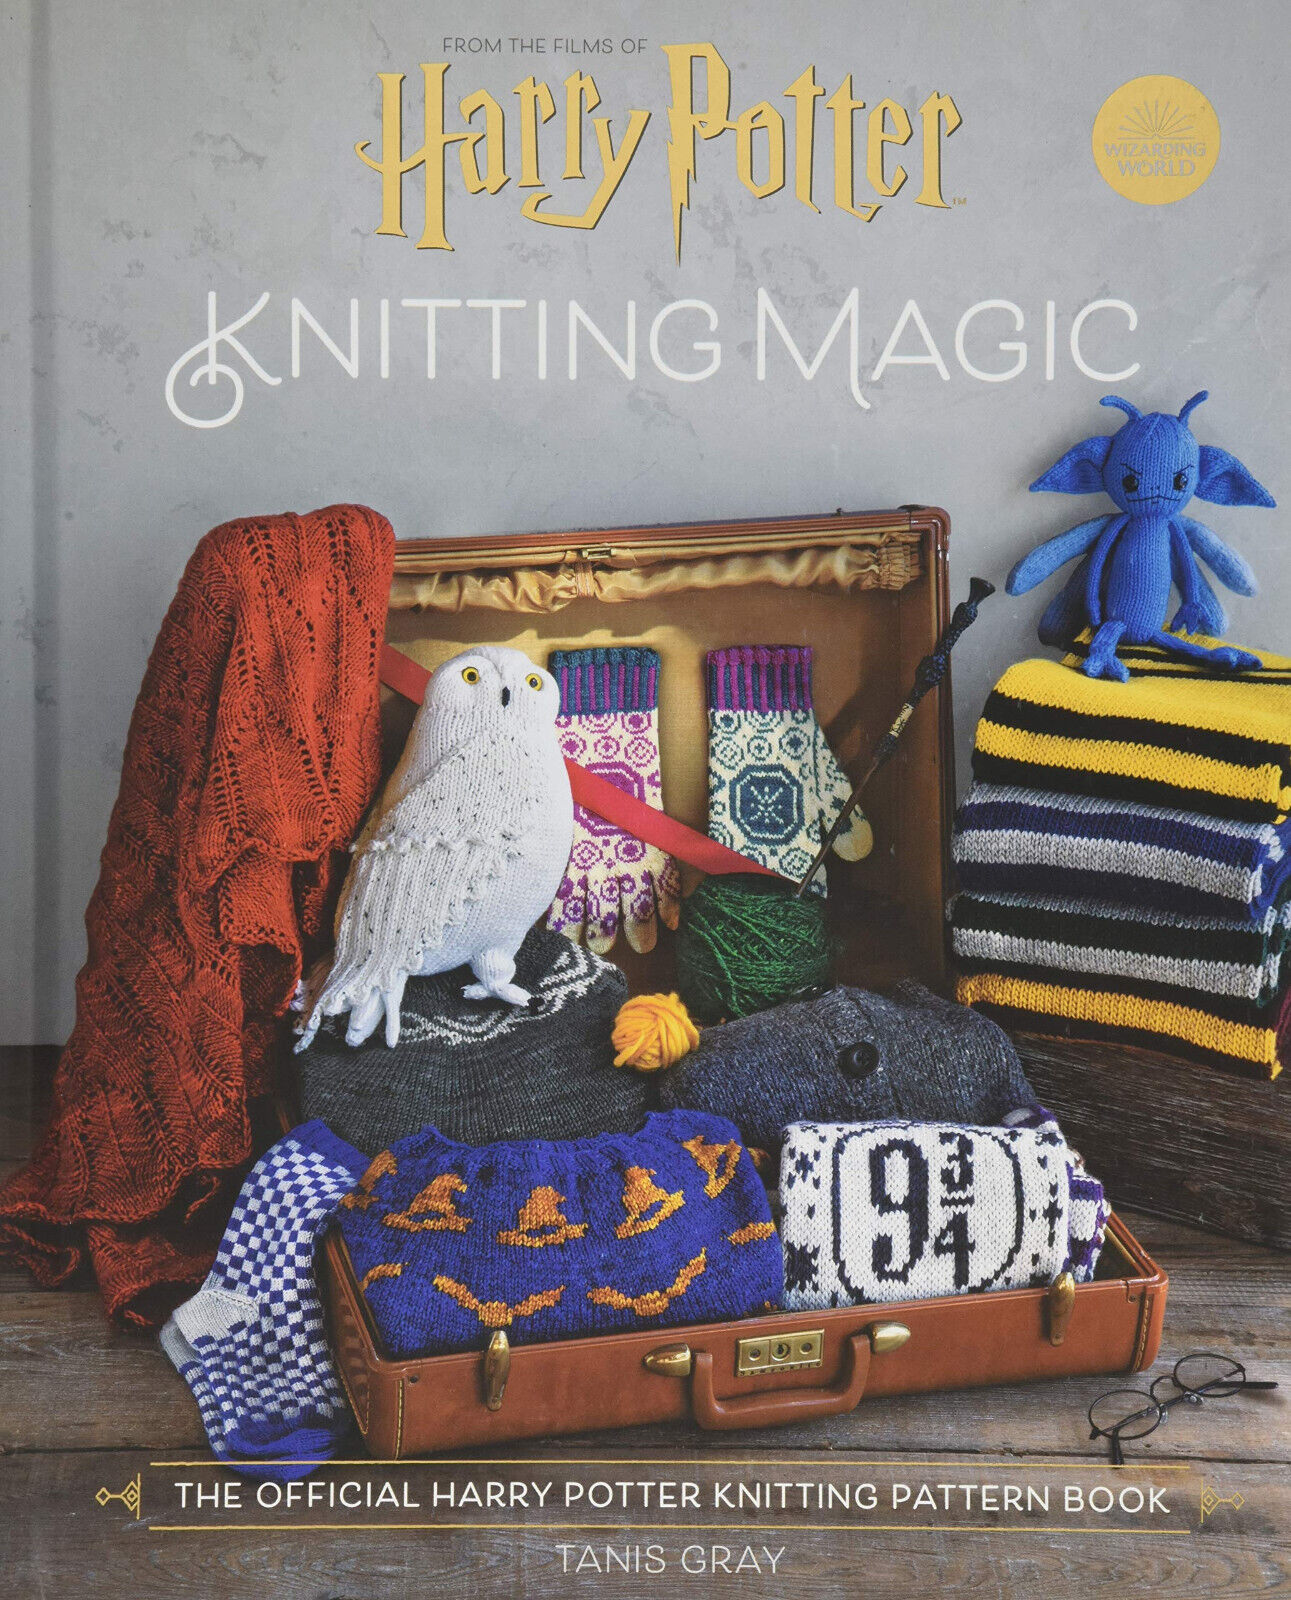 Harry Potter Knitting Magic - Tanis Gray - Pavilion Books, 2020